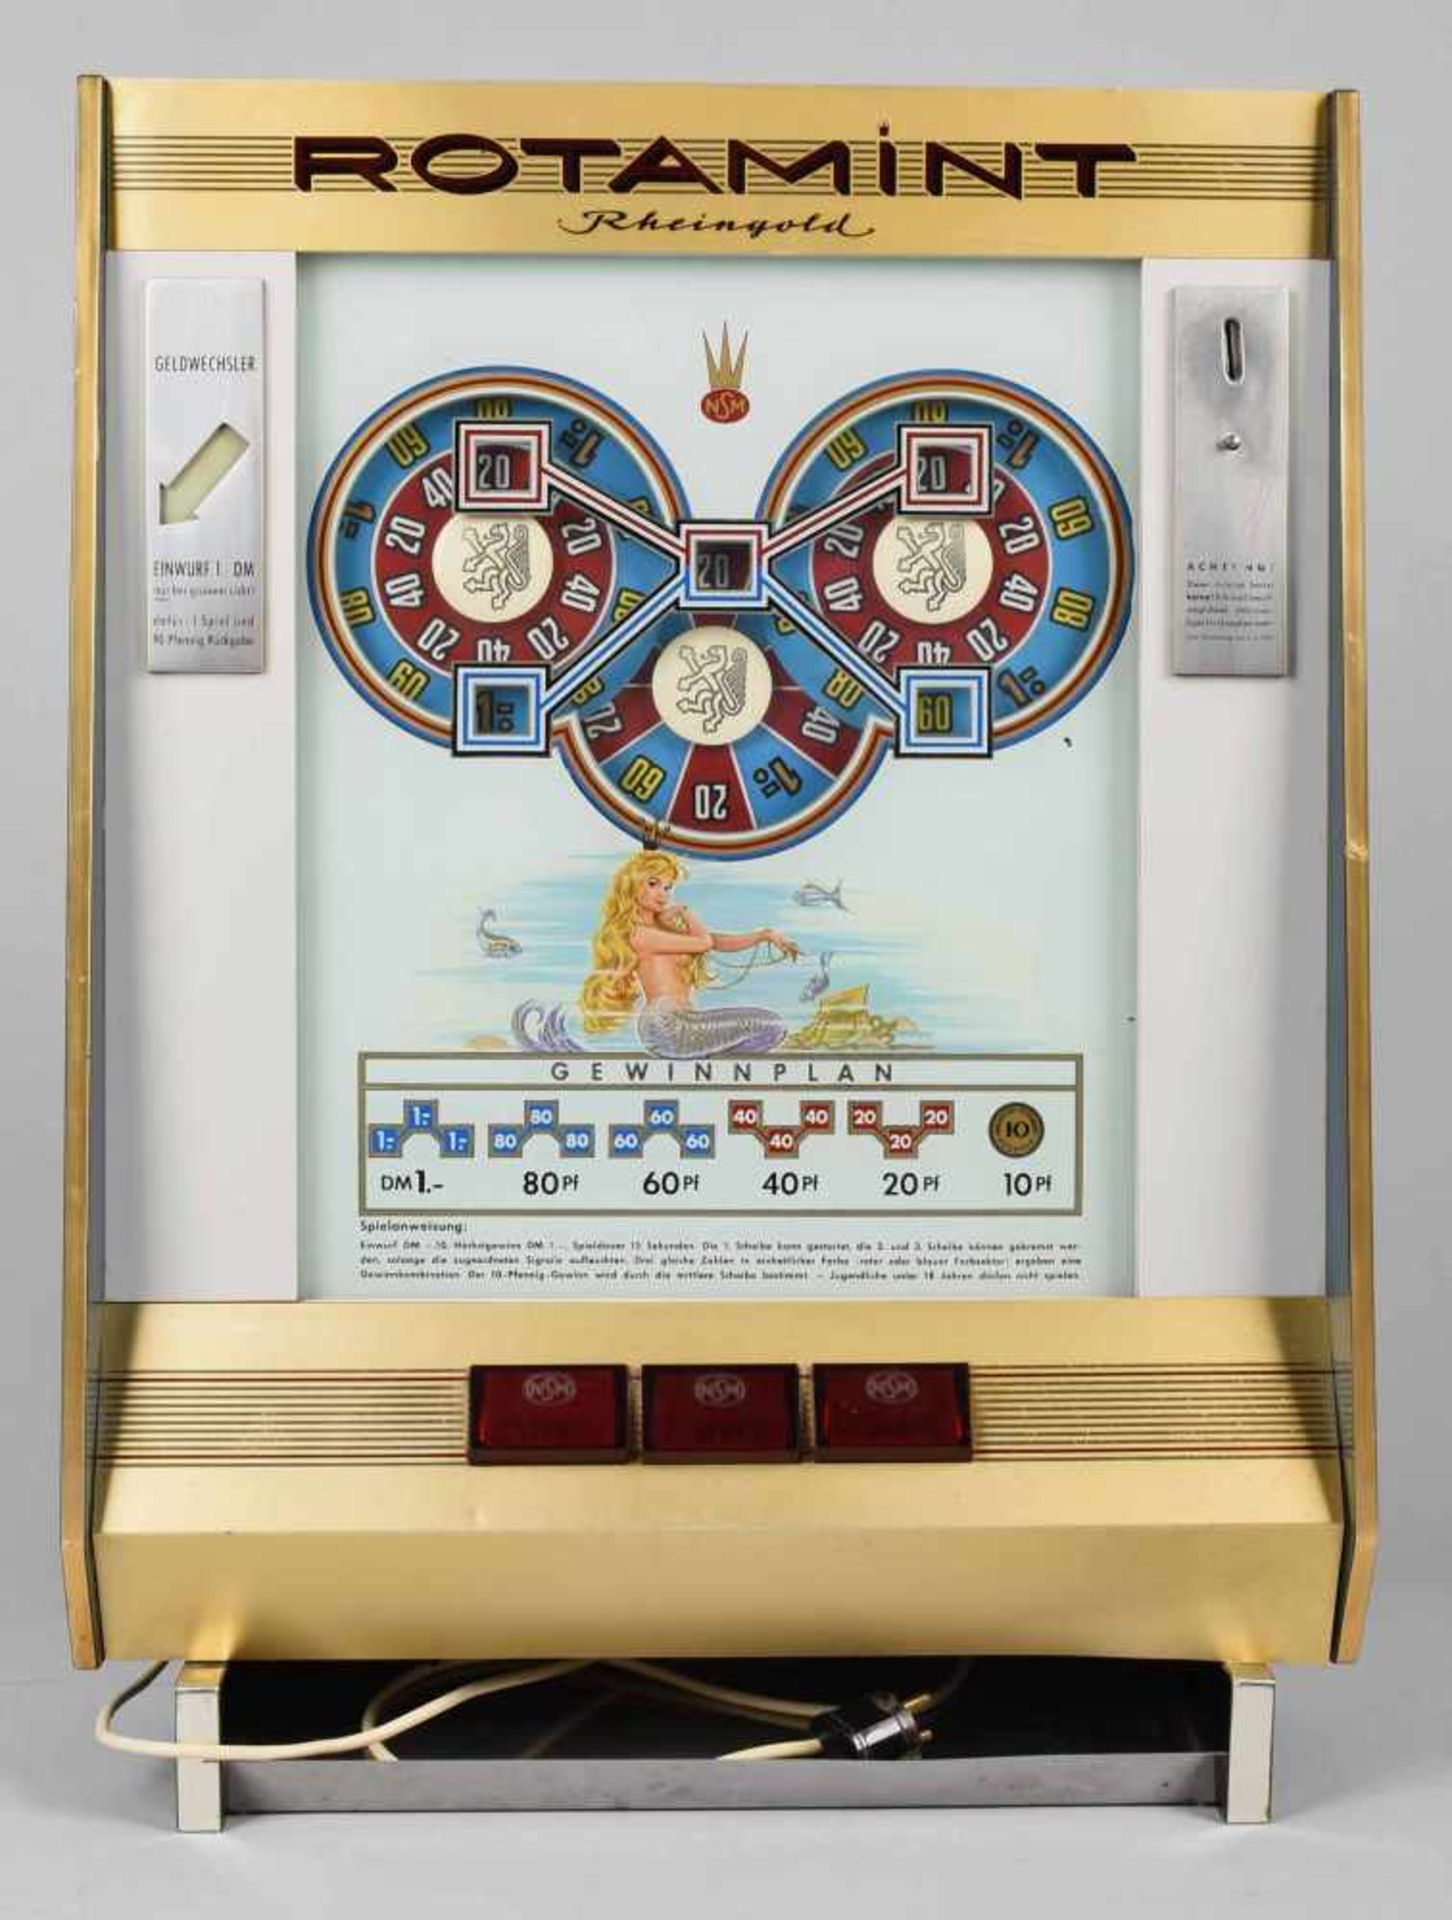 Wandspielautomat "Rotamint Rheingold", elektrisch betrieben, mit Geldeinwurf, 3 Rotationsscheiben - Bild 2 aus 2